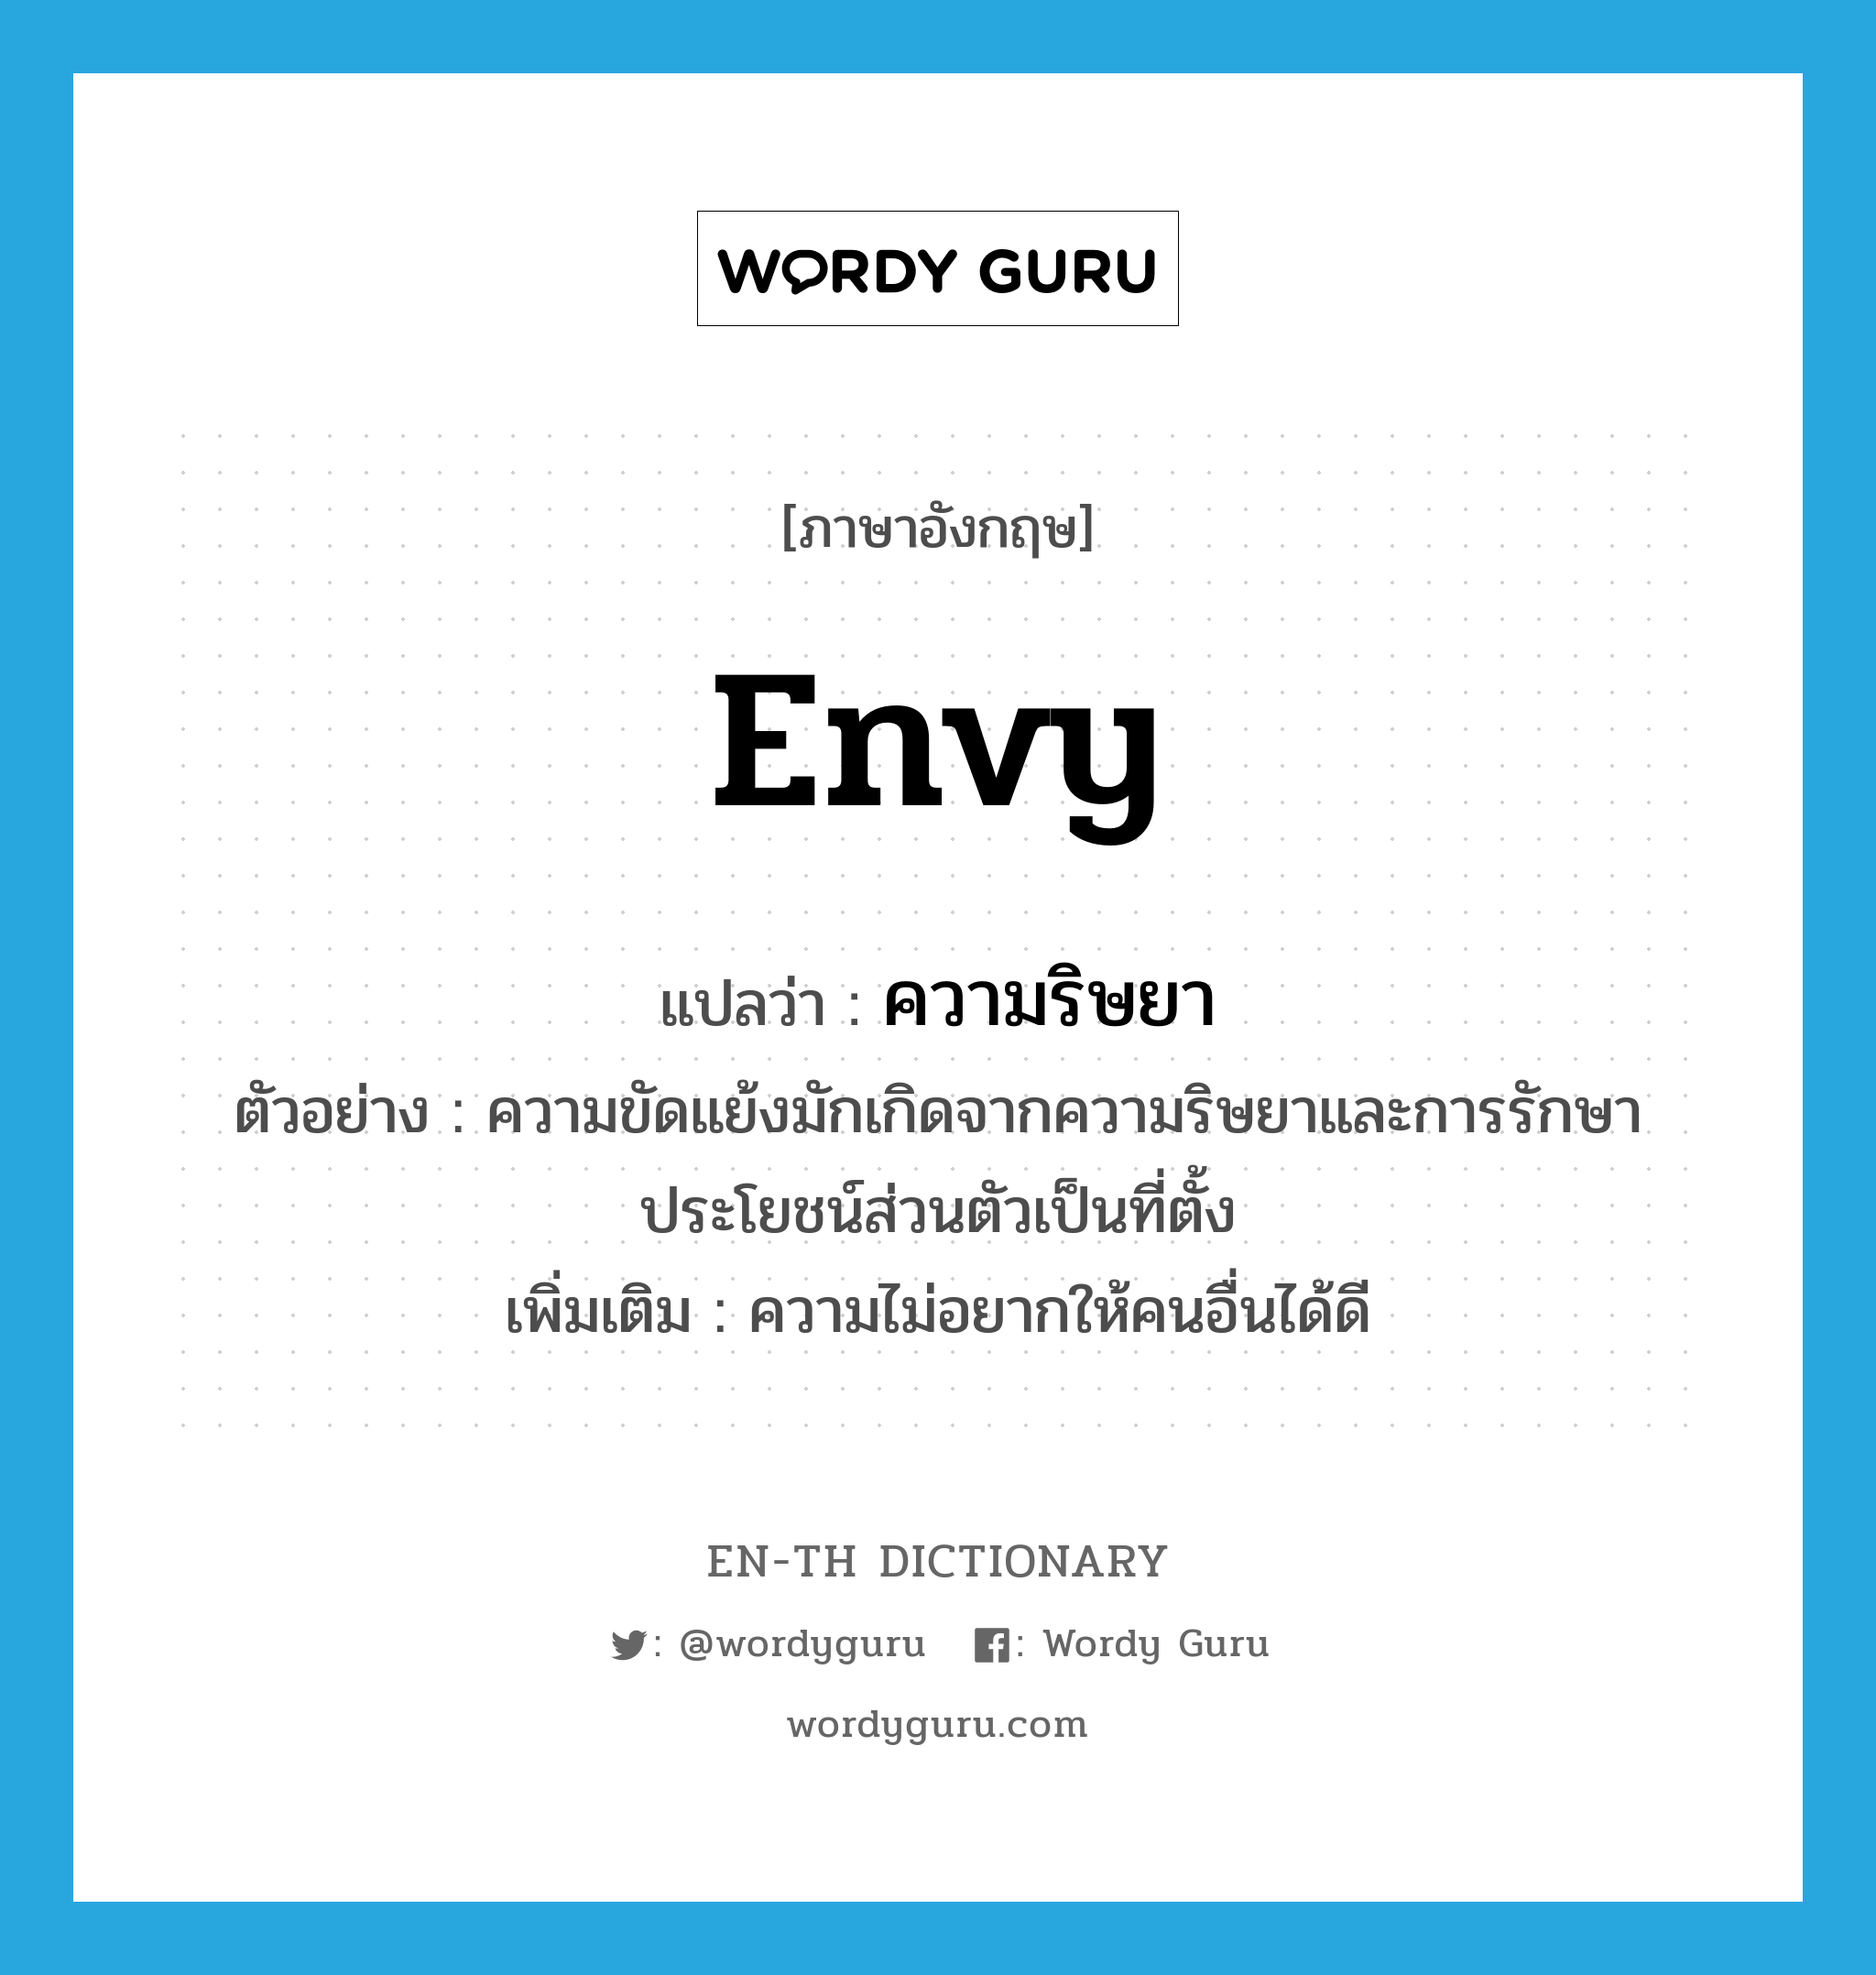 envy แปลว่า?, คำศัพท์ภาษาอังกฤษ envy แปลว่า ความริษยา ประเภท N ตัวอย่าง ความขัดแย้งมักเกิดจากความริษยาและการรักษาประโยชน์ส่วนตัวเป็นที่ตั้ง เพิ่มเติม ความไม่อยากให้คนอื่นได้ดี หมวด N